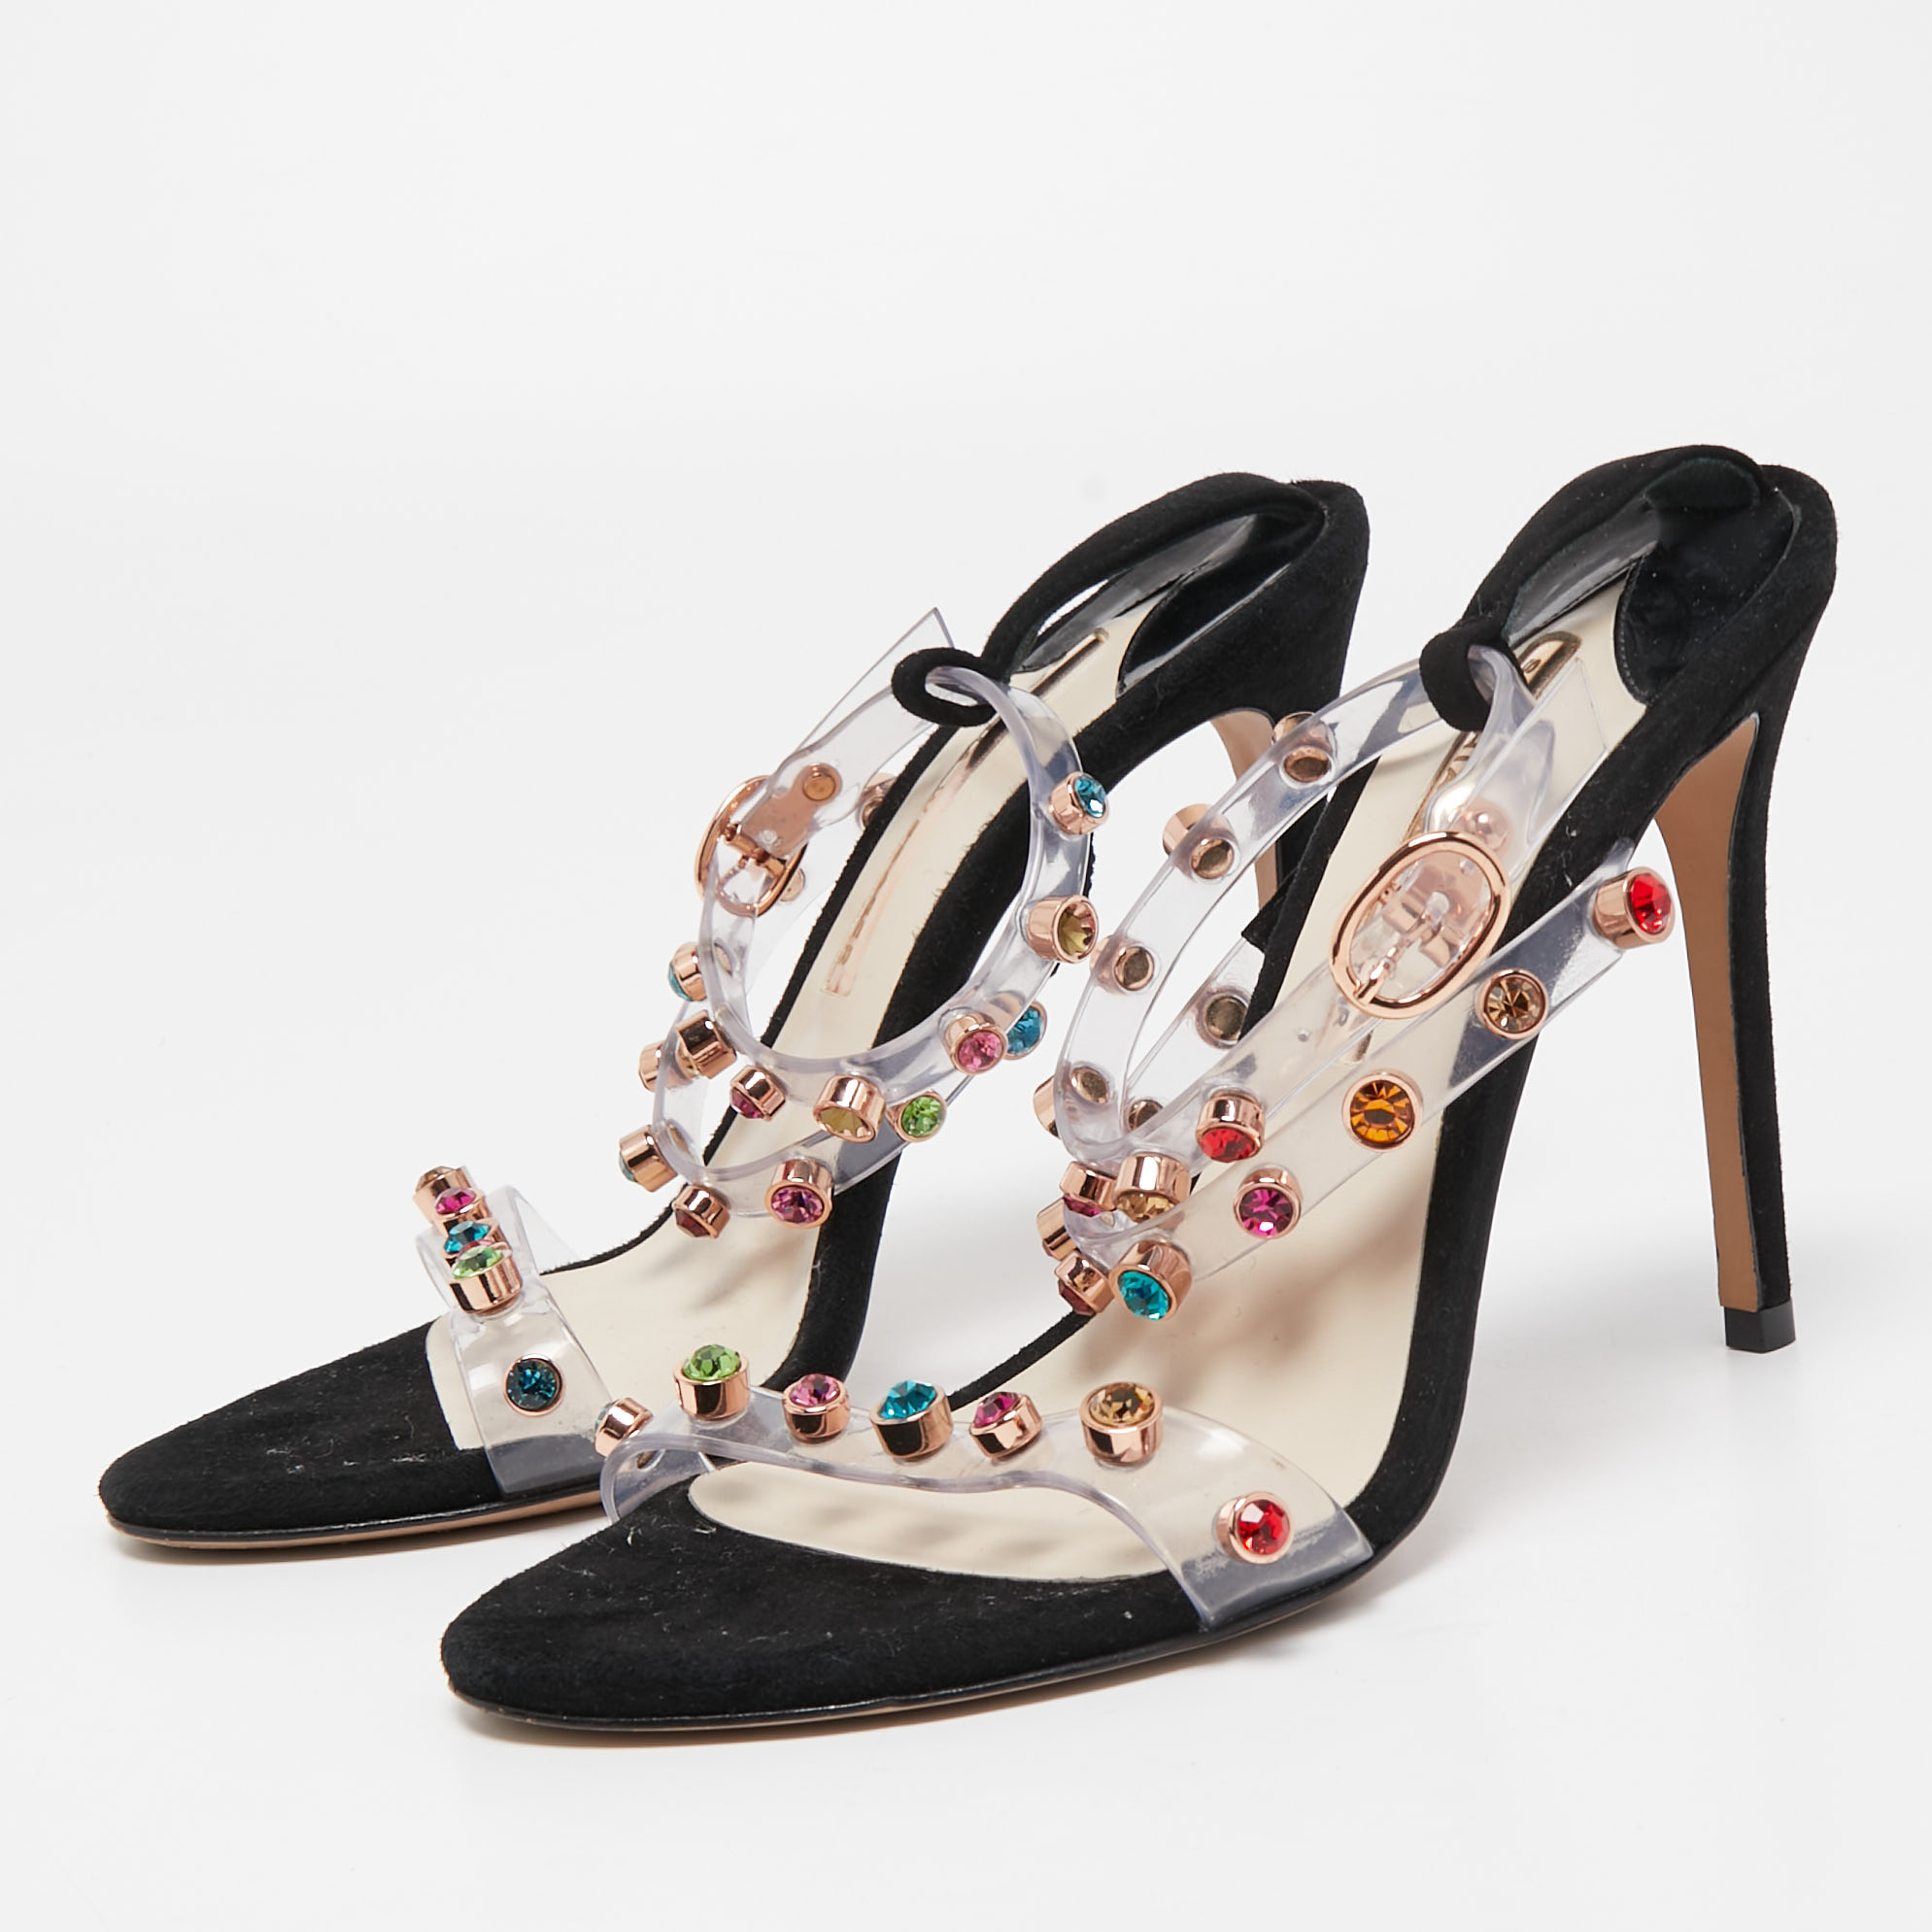 

Sophia Webster White/Black PVC And Leather Rosalind Crystal Embellished Ankle Strap Sandals Size